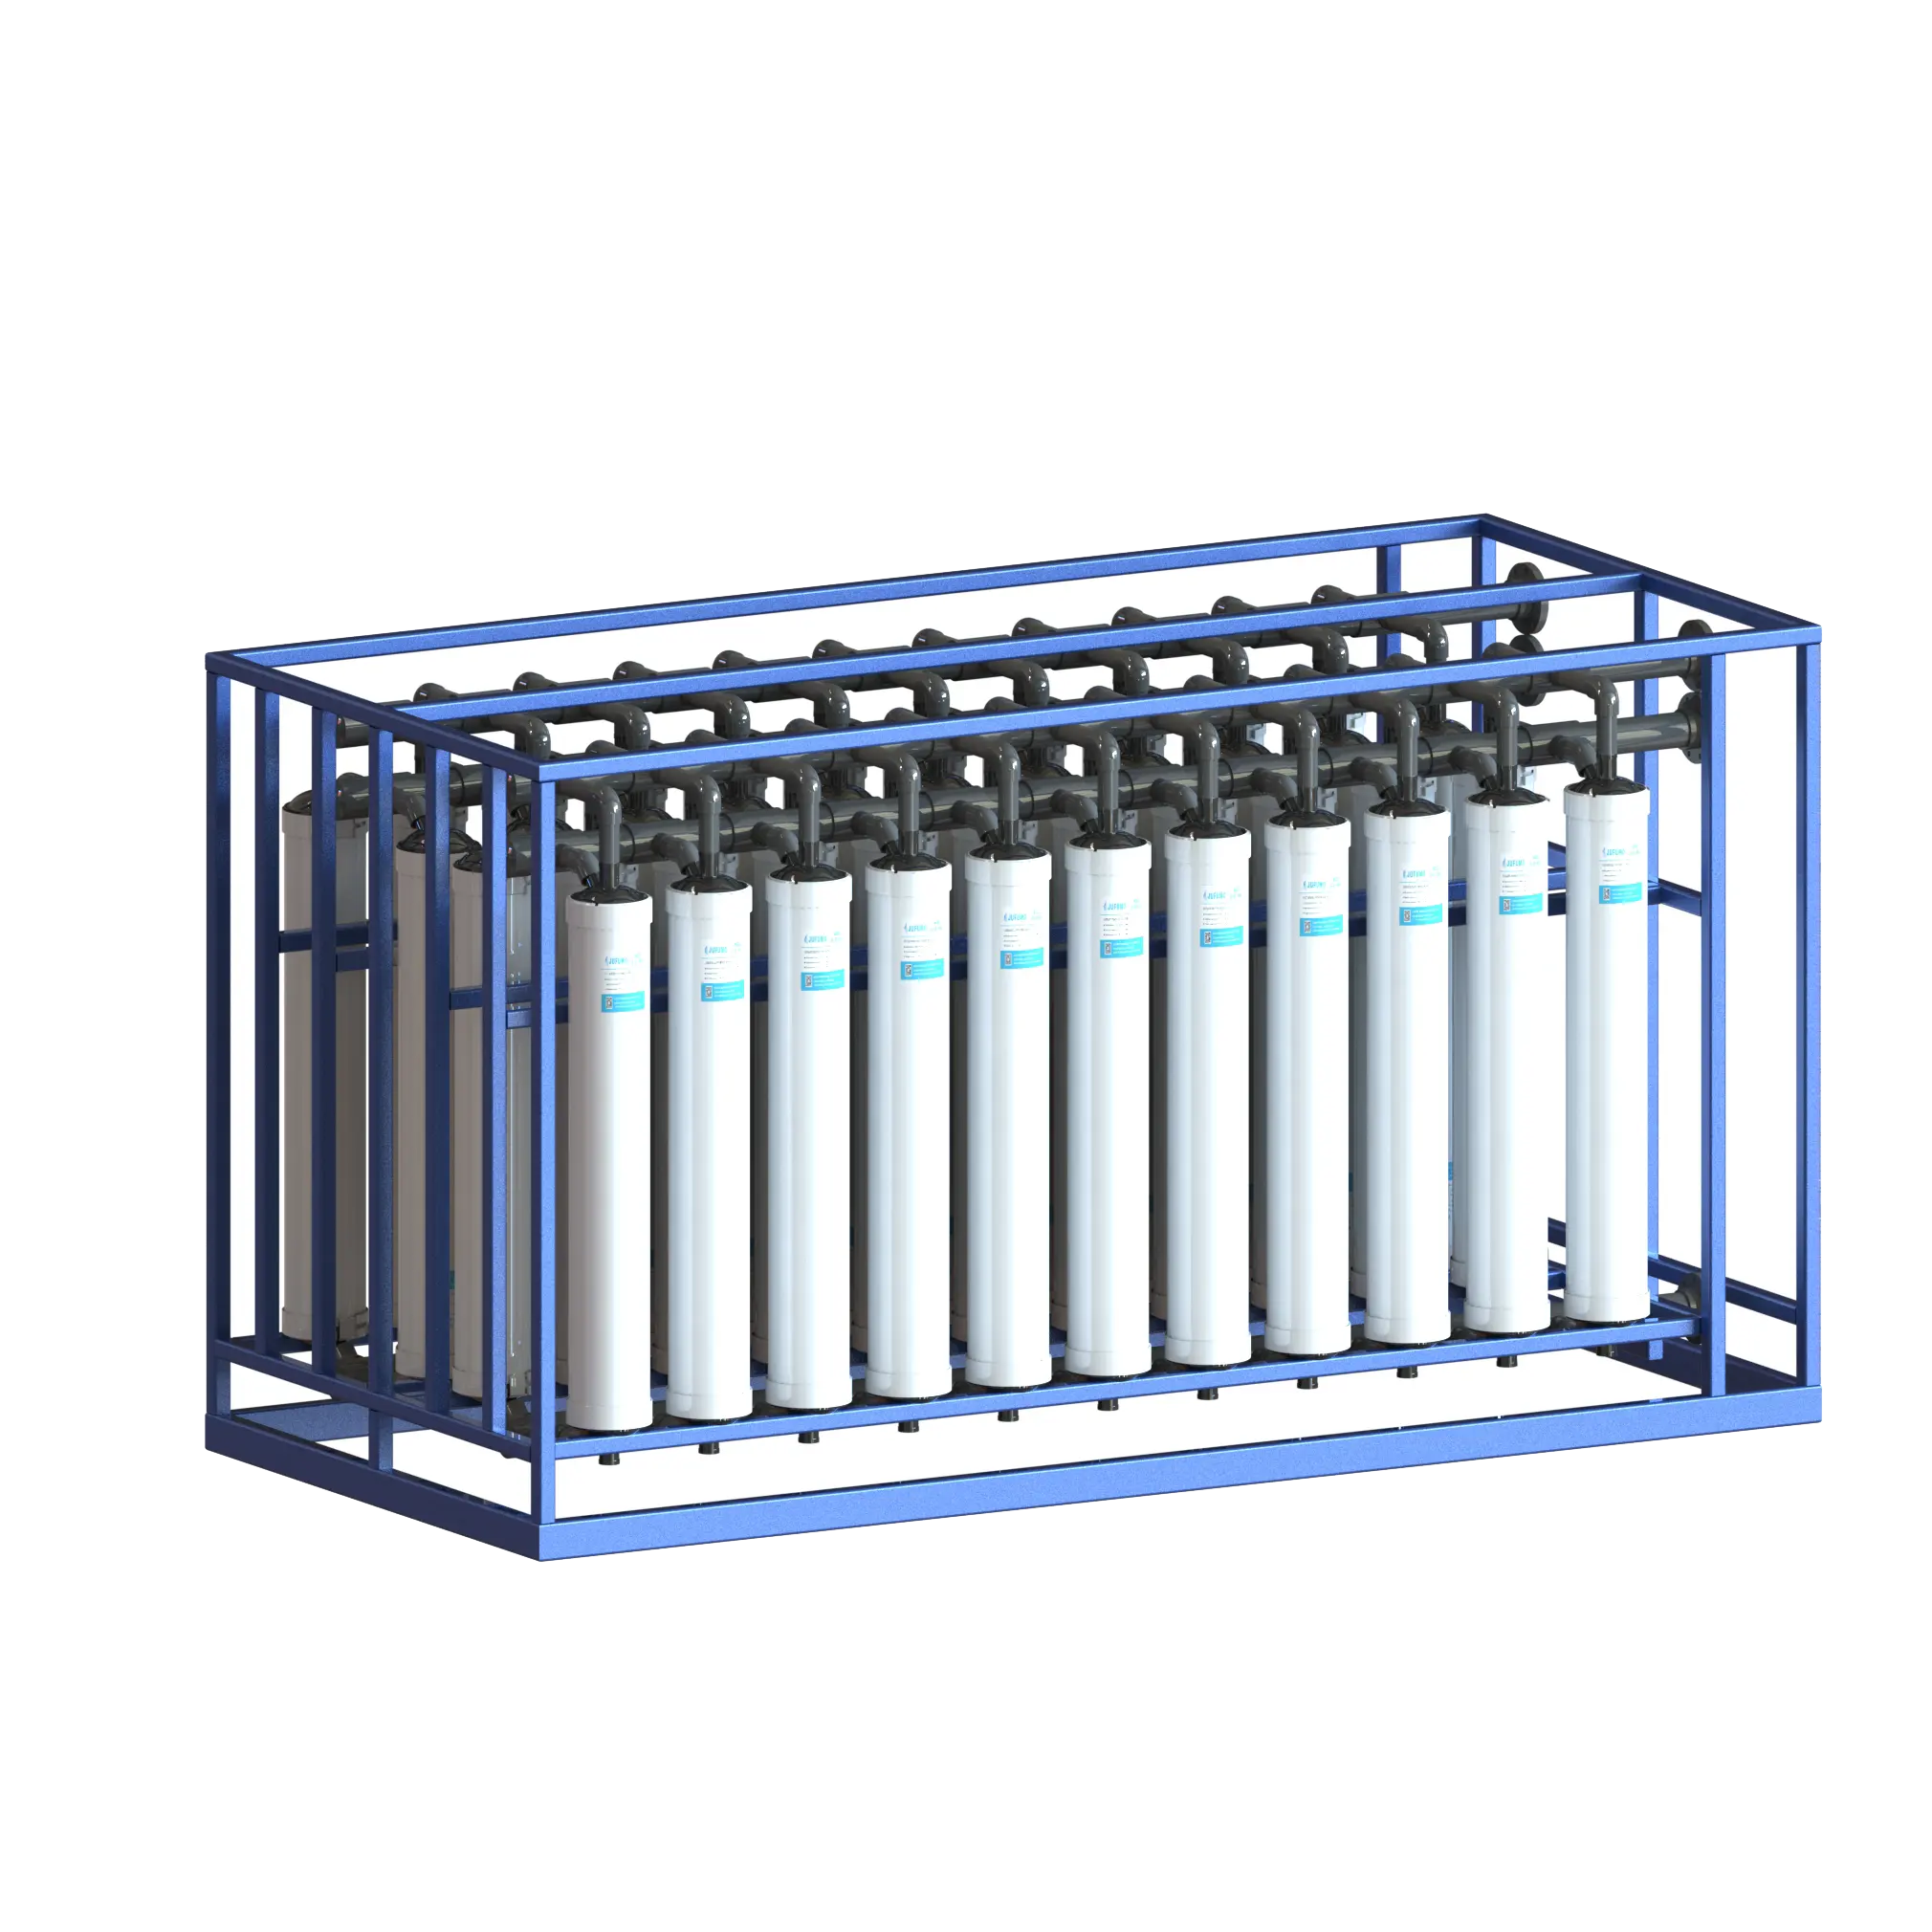 Preço de fábrica mais barato membrana de ultrafiltração 4040 mbr tratamento de águas residuais para esgoto doméstico